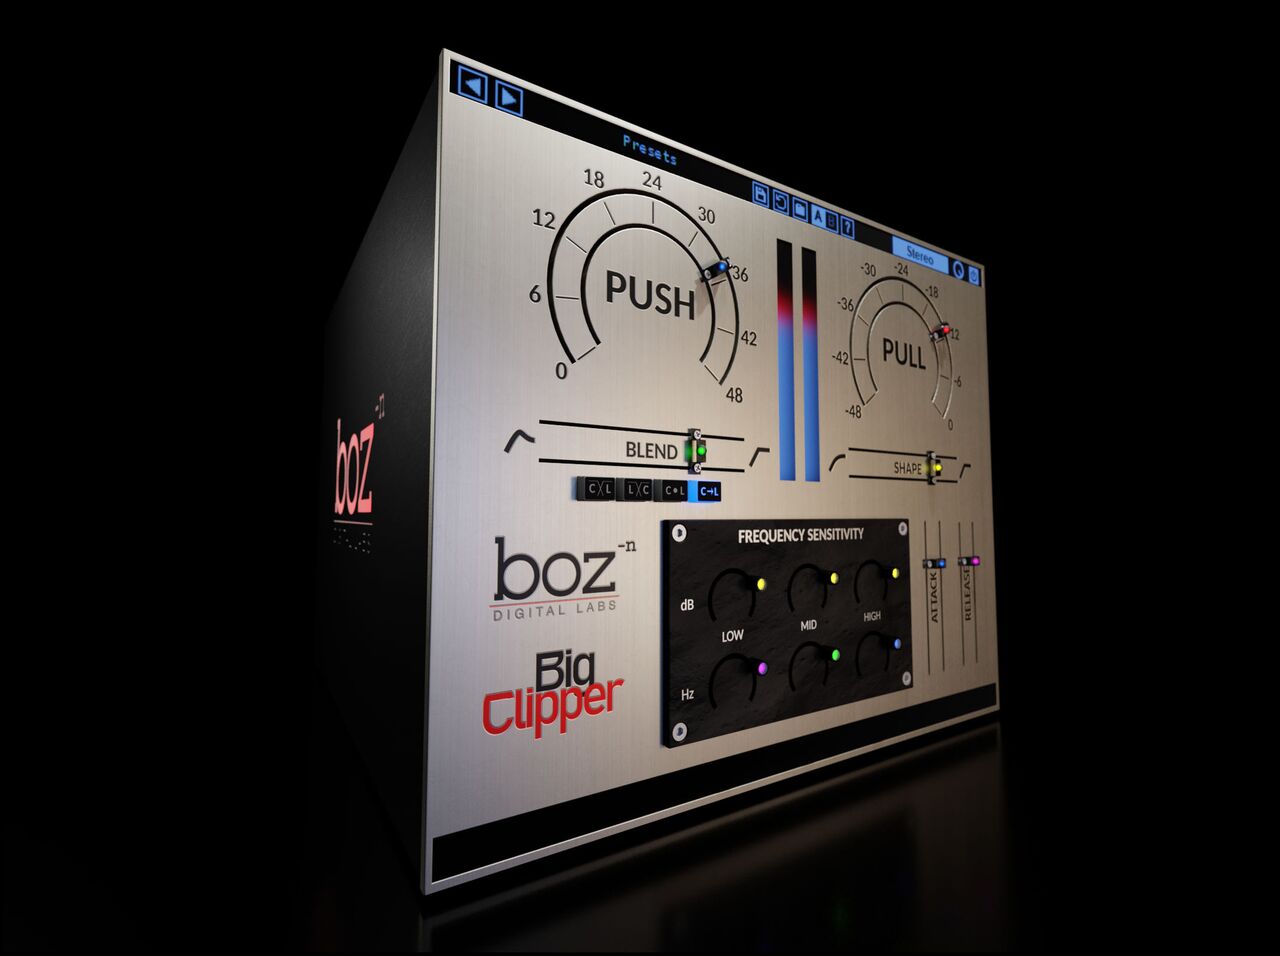 Boz Digital Labs Big Clipper